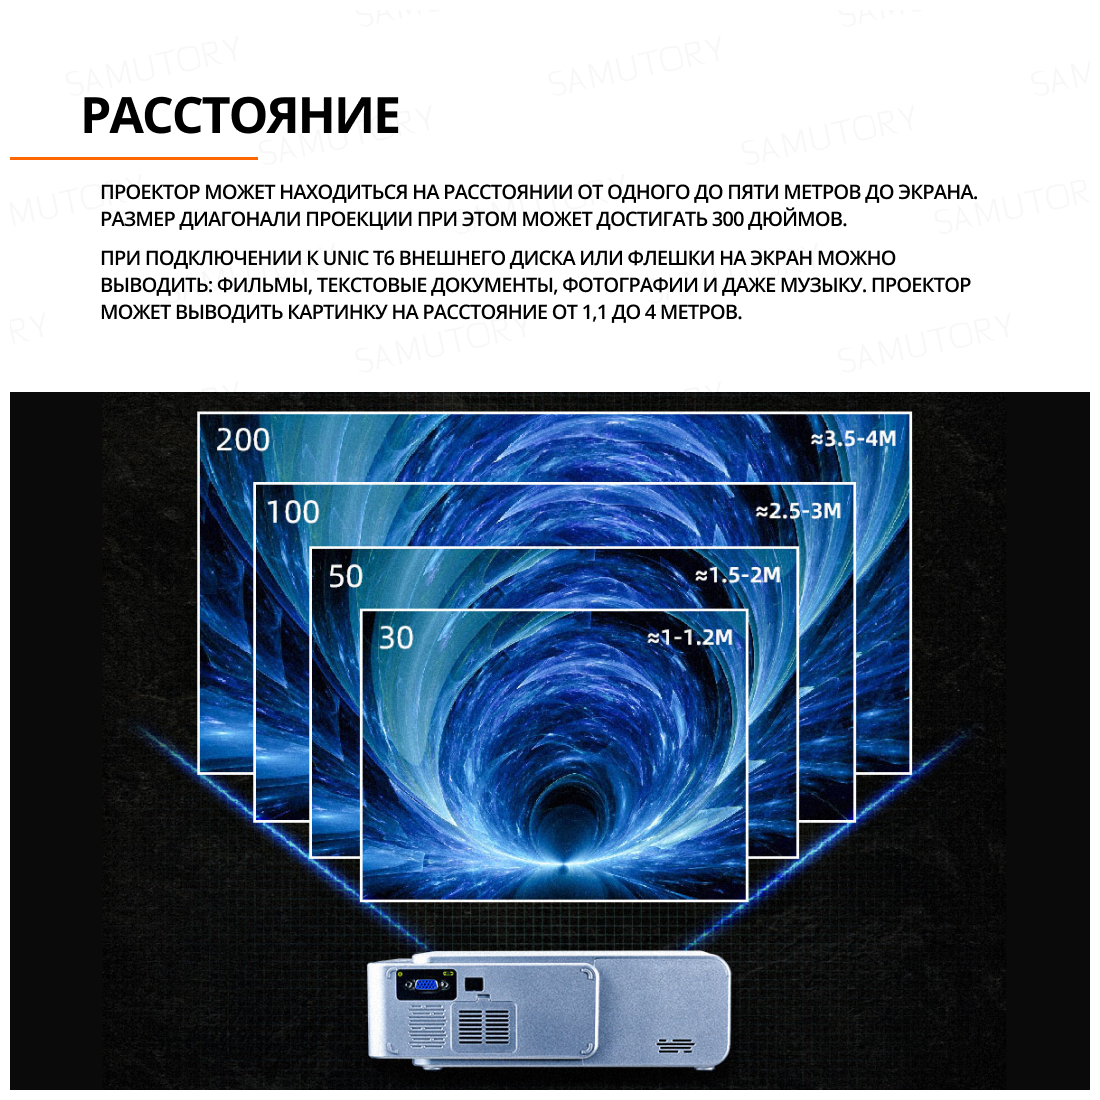 UNIC T6 Мини-проектор 1920x1080 Full HD , светодиодный,3D, Android, Wi-Fi, для кино и игр